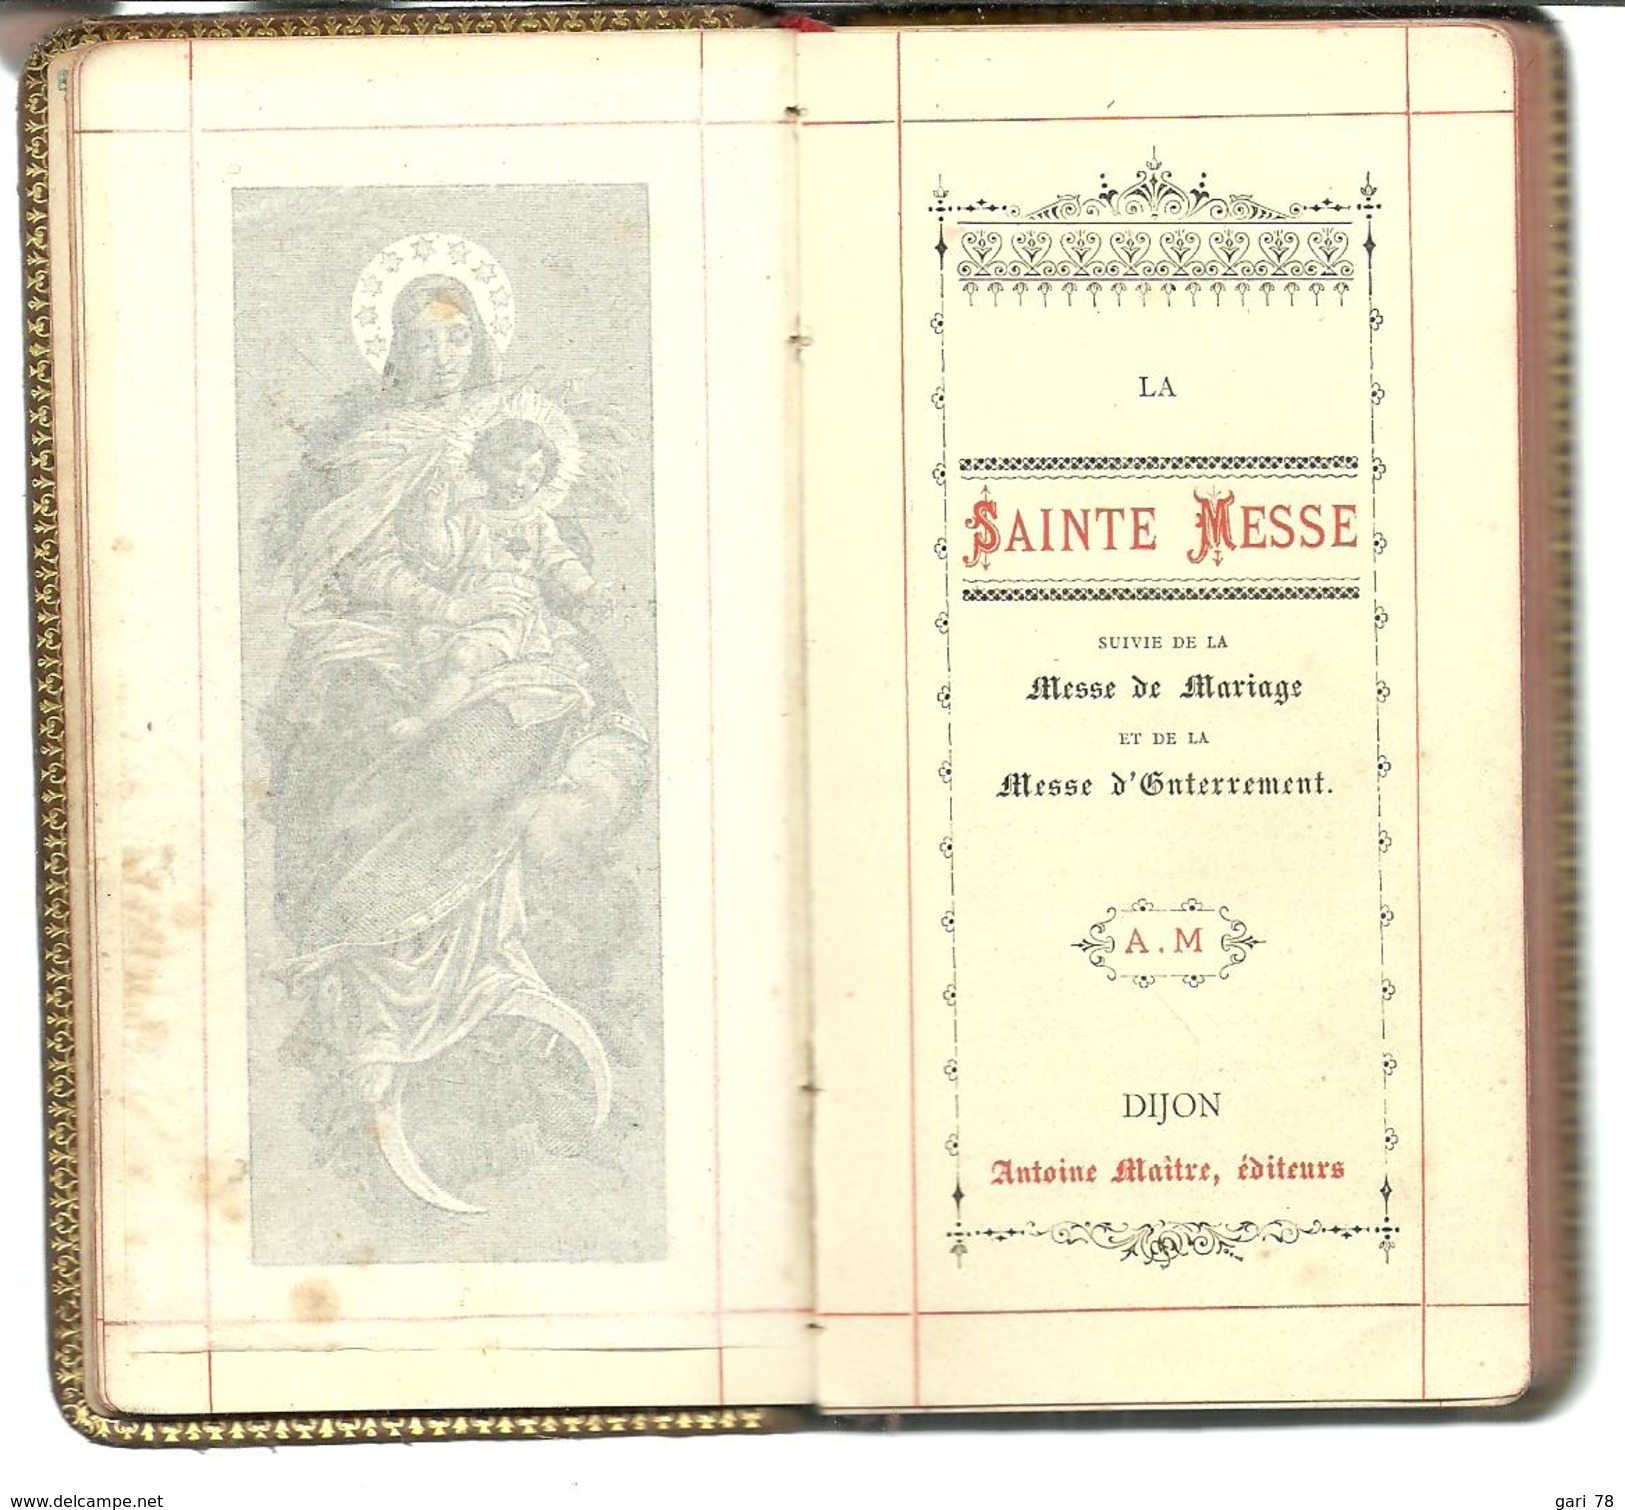 1890 DIJON / LA SAINTE MESSE + DE MARIAGE + MESSE D'ENTERREMENT Monogrammé MC - Godsdienst